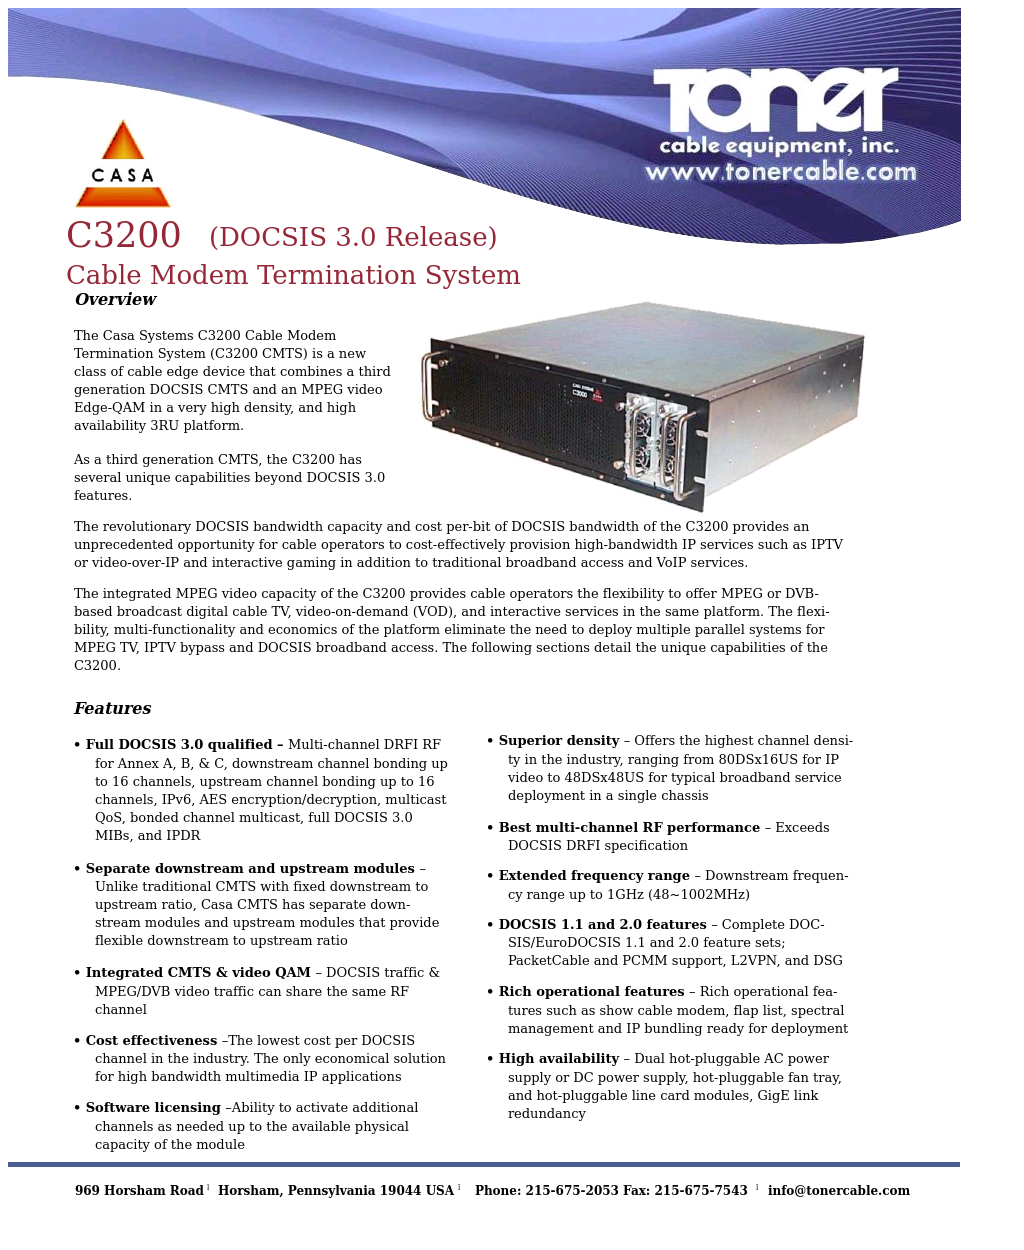 C3200 DOCSIS 3.0 Cable Modem Termination System